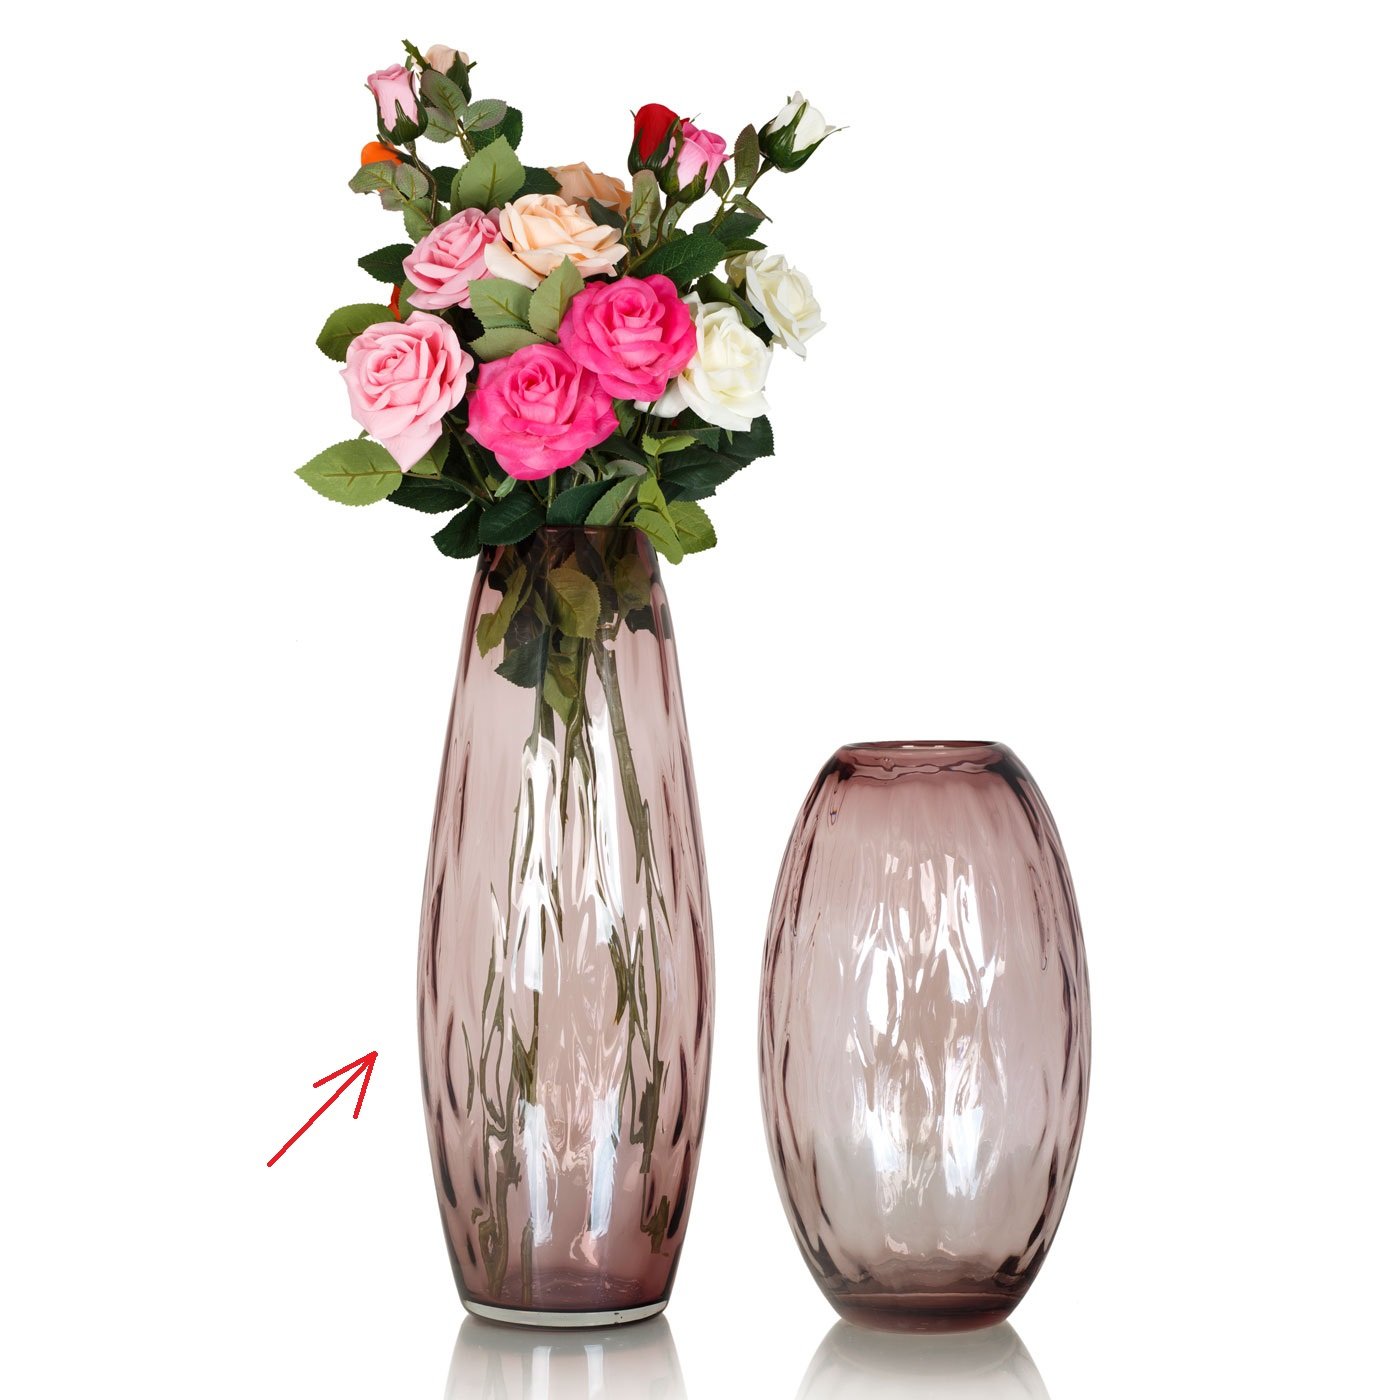 Ваза для больших букетов. Цветочные вазы. Вазы для цветов. Интерьерные вазы. Вазы для декора интерьера.